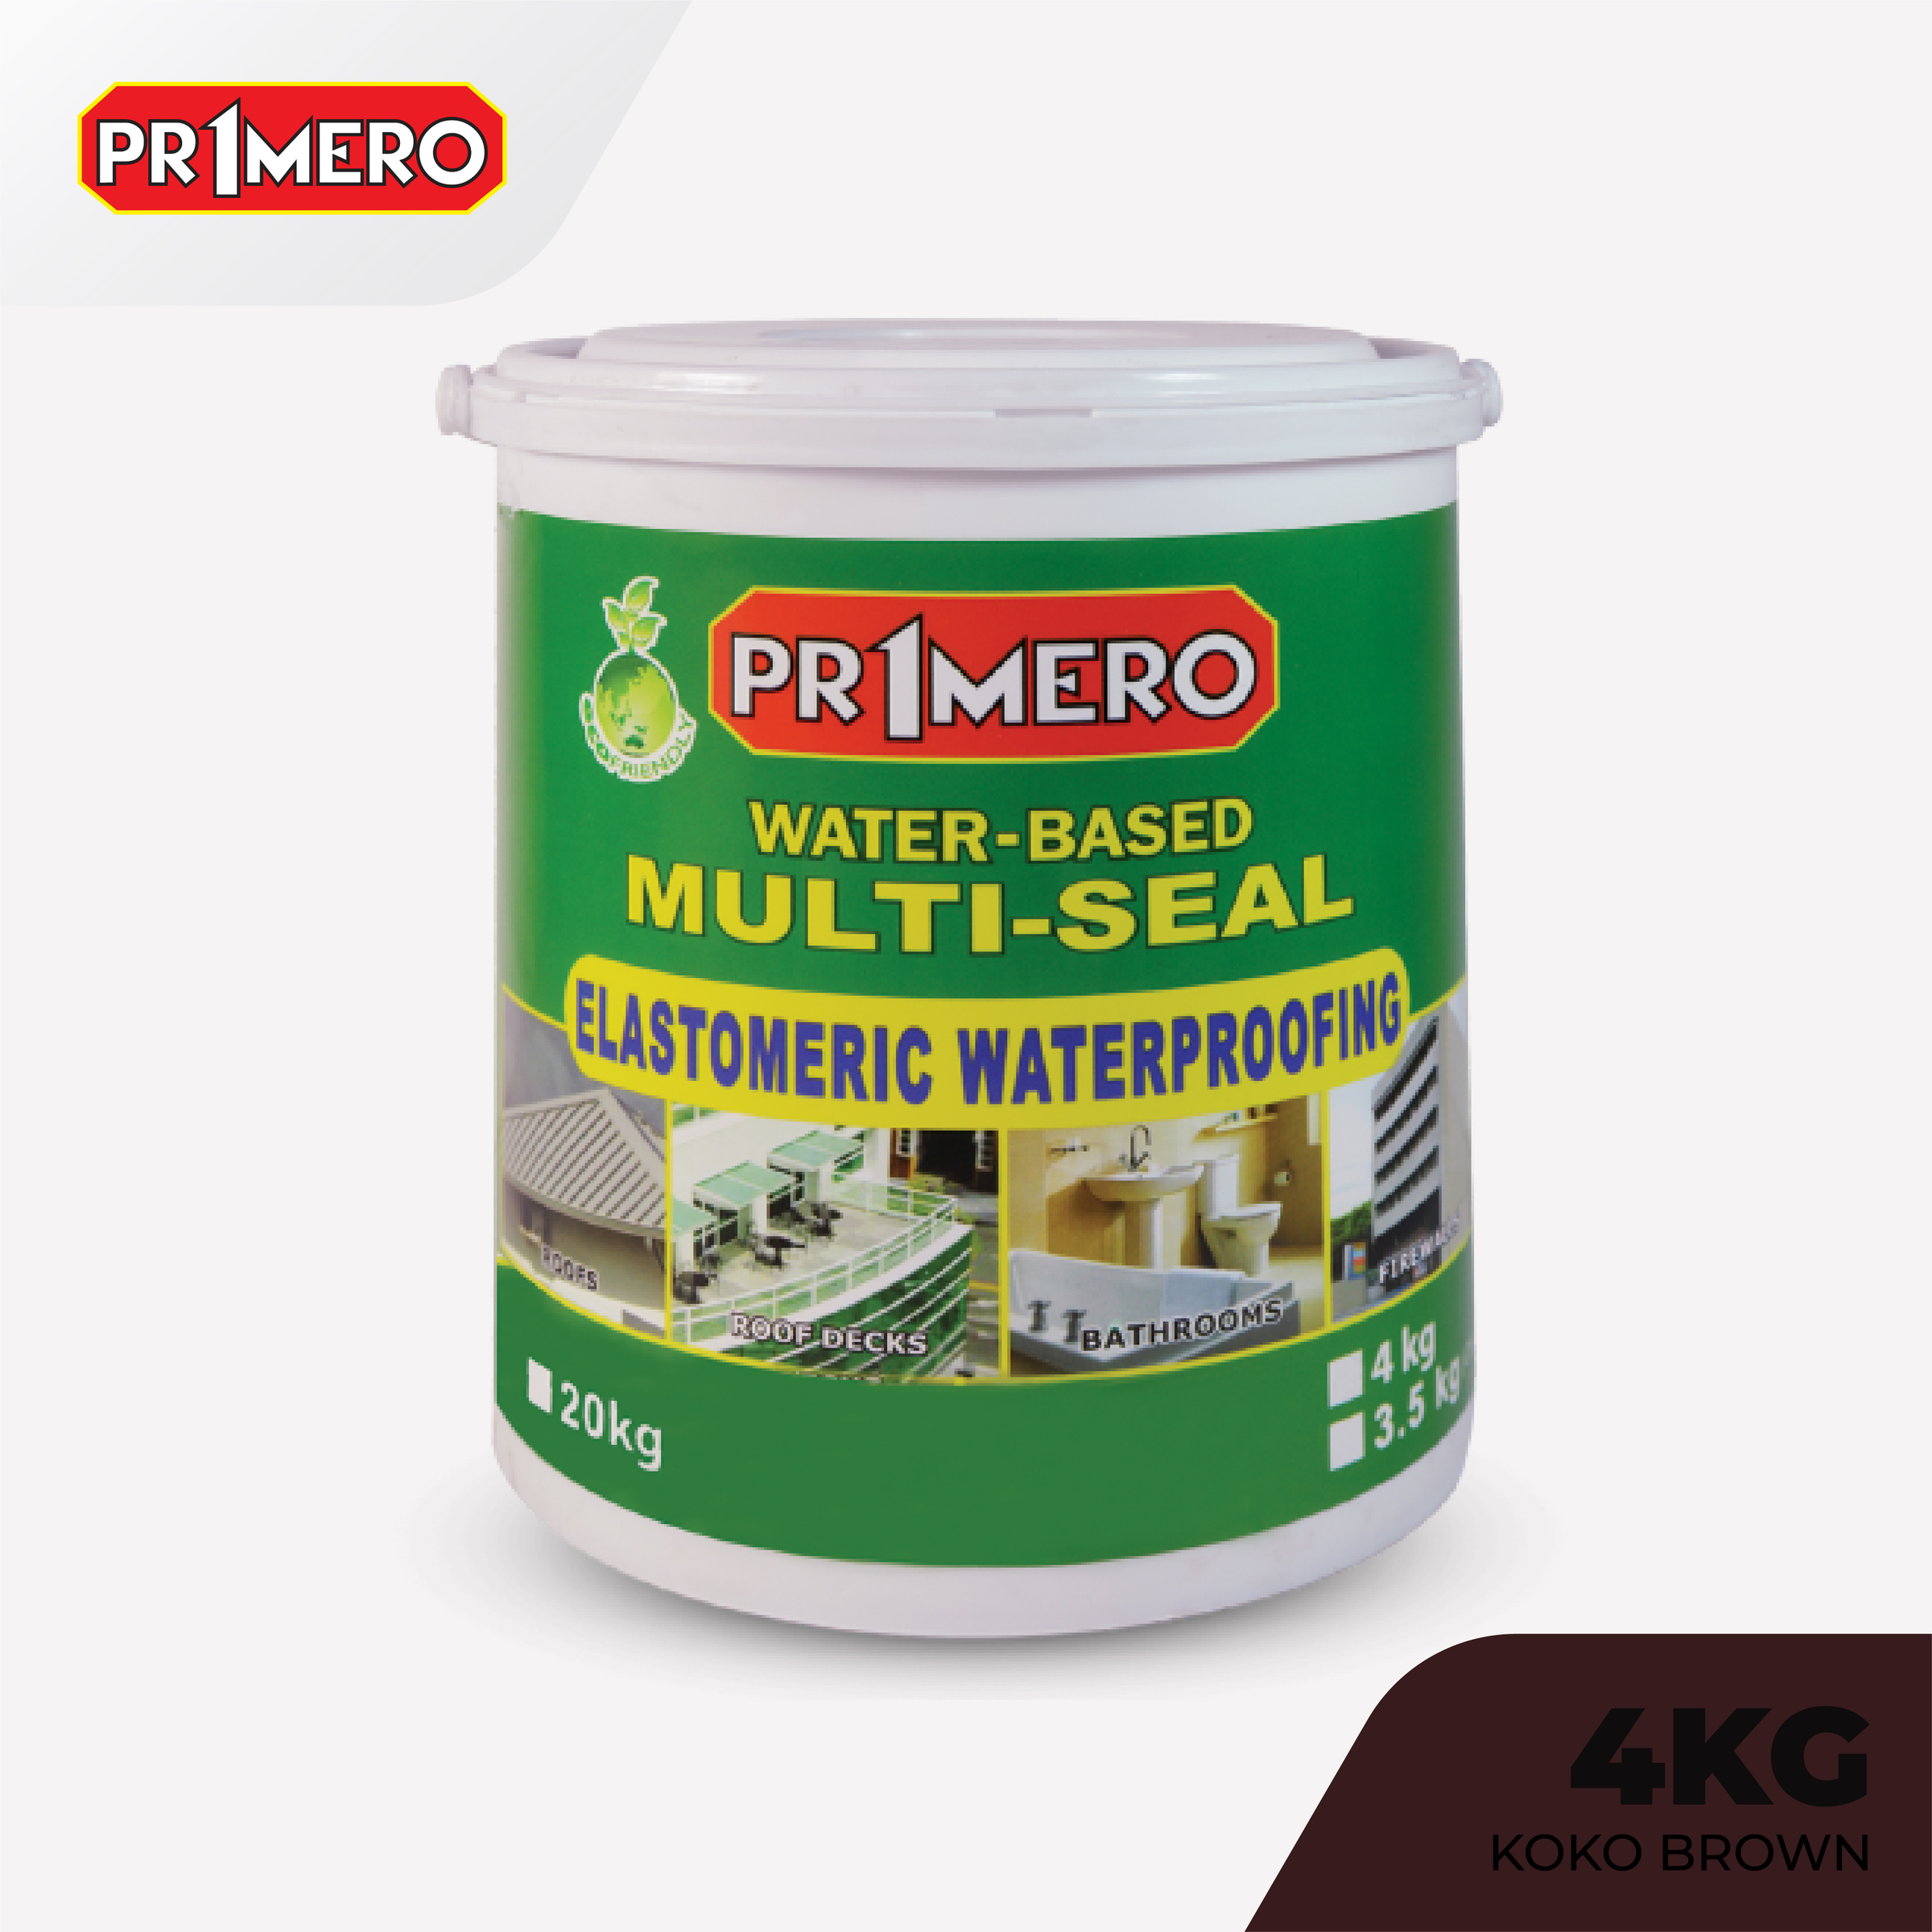 Primero Multi-Seal Elastomeric Waterproofing Sealant Koko Brown - 4Kg